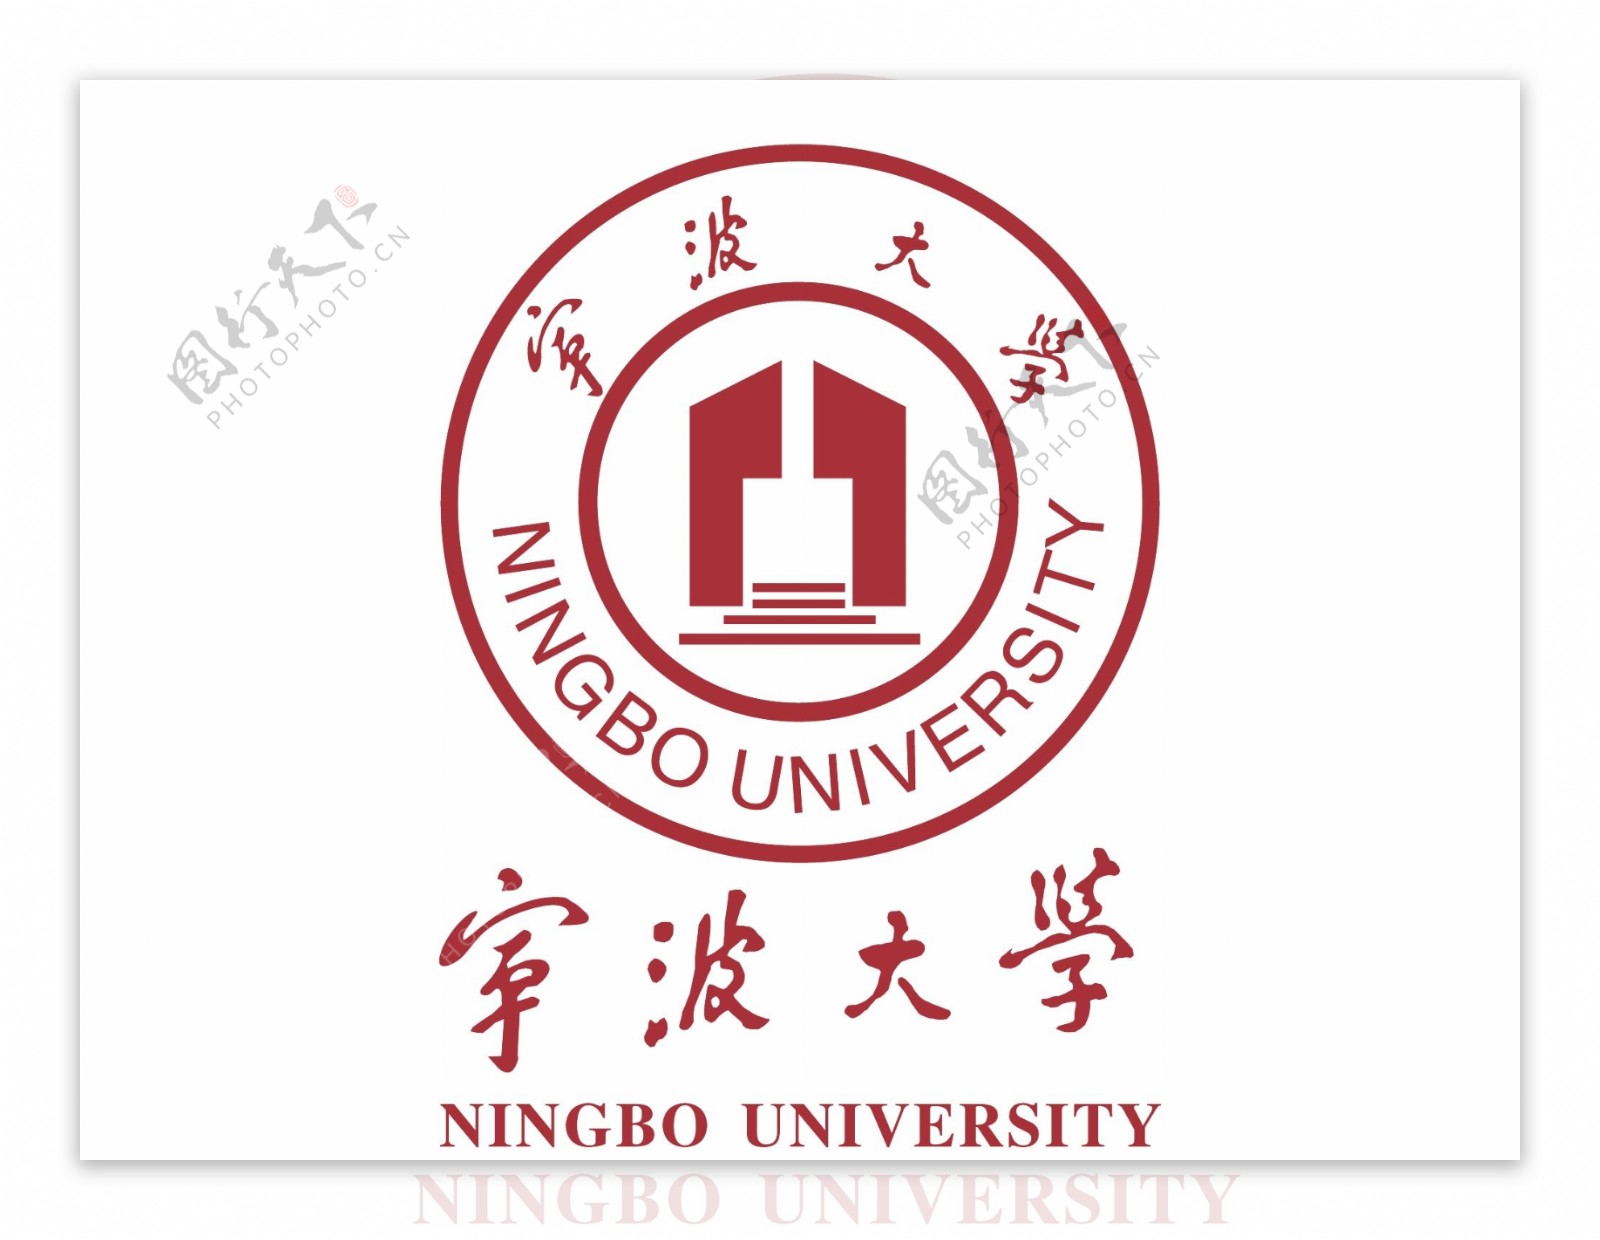 宁波大学logo